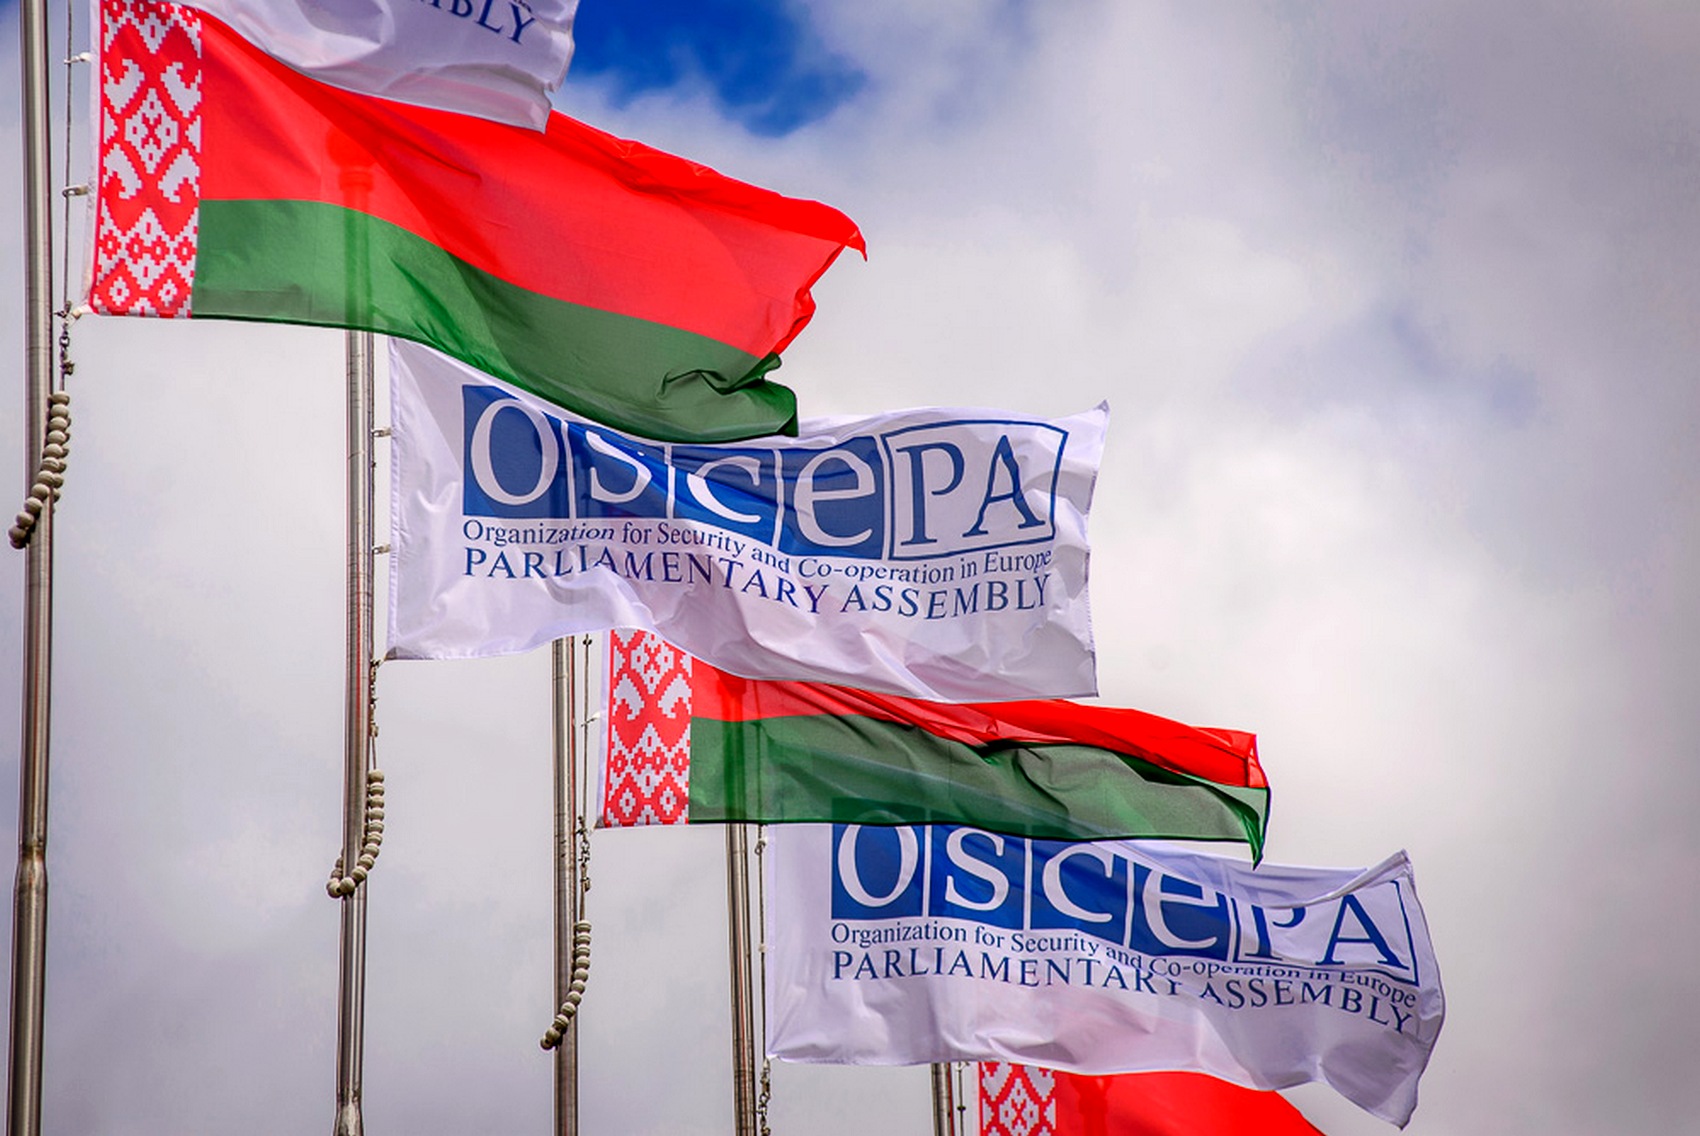 Представители Беларуси не попали на ПА ОБСЕ: им не дали визы в Австрию по требованию Польши